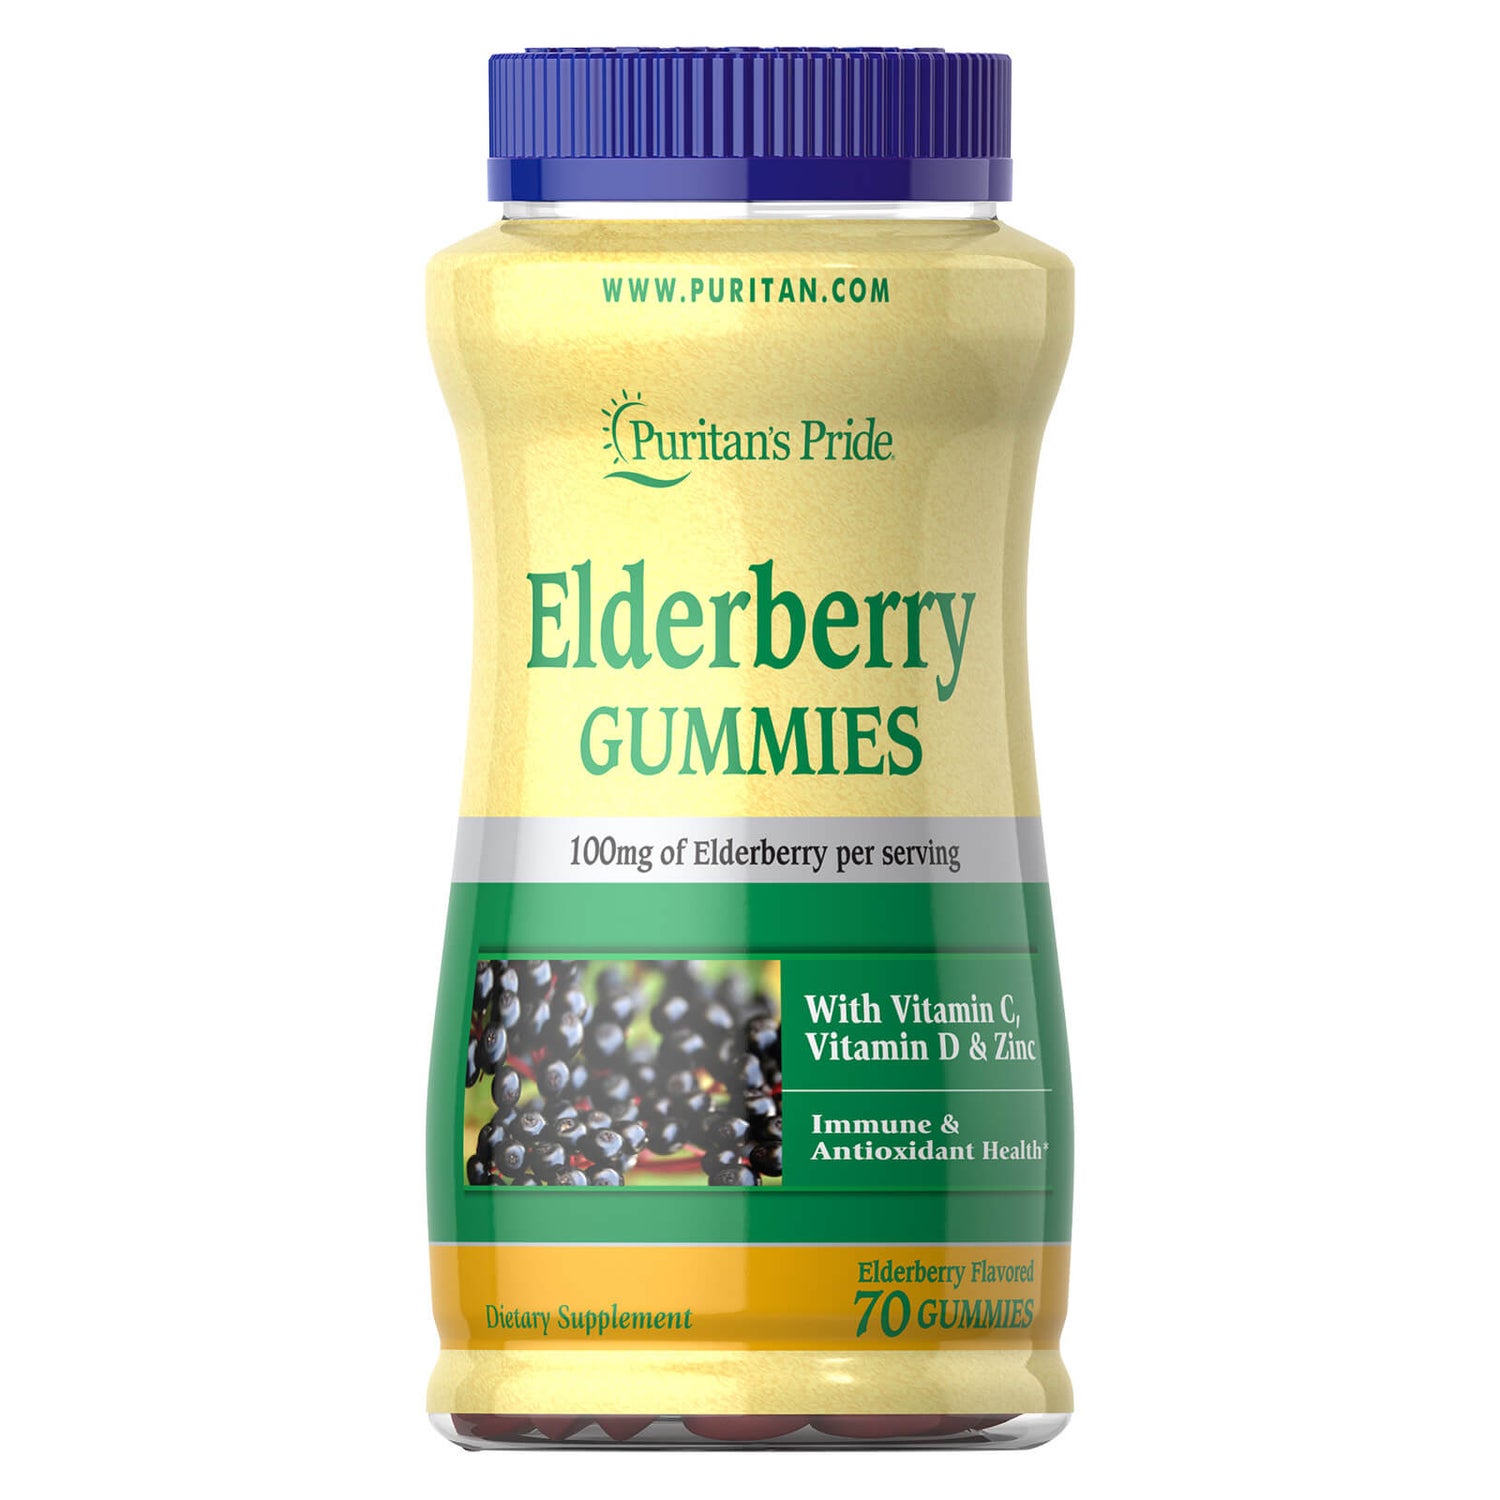 Puritan's Pride Elderberry Gummy 100mg - 70 Gummies